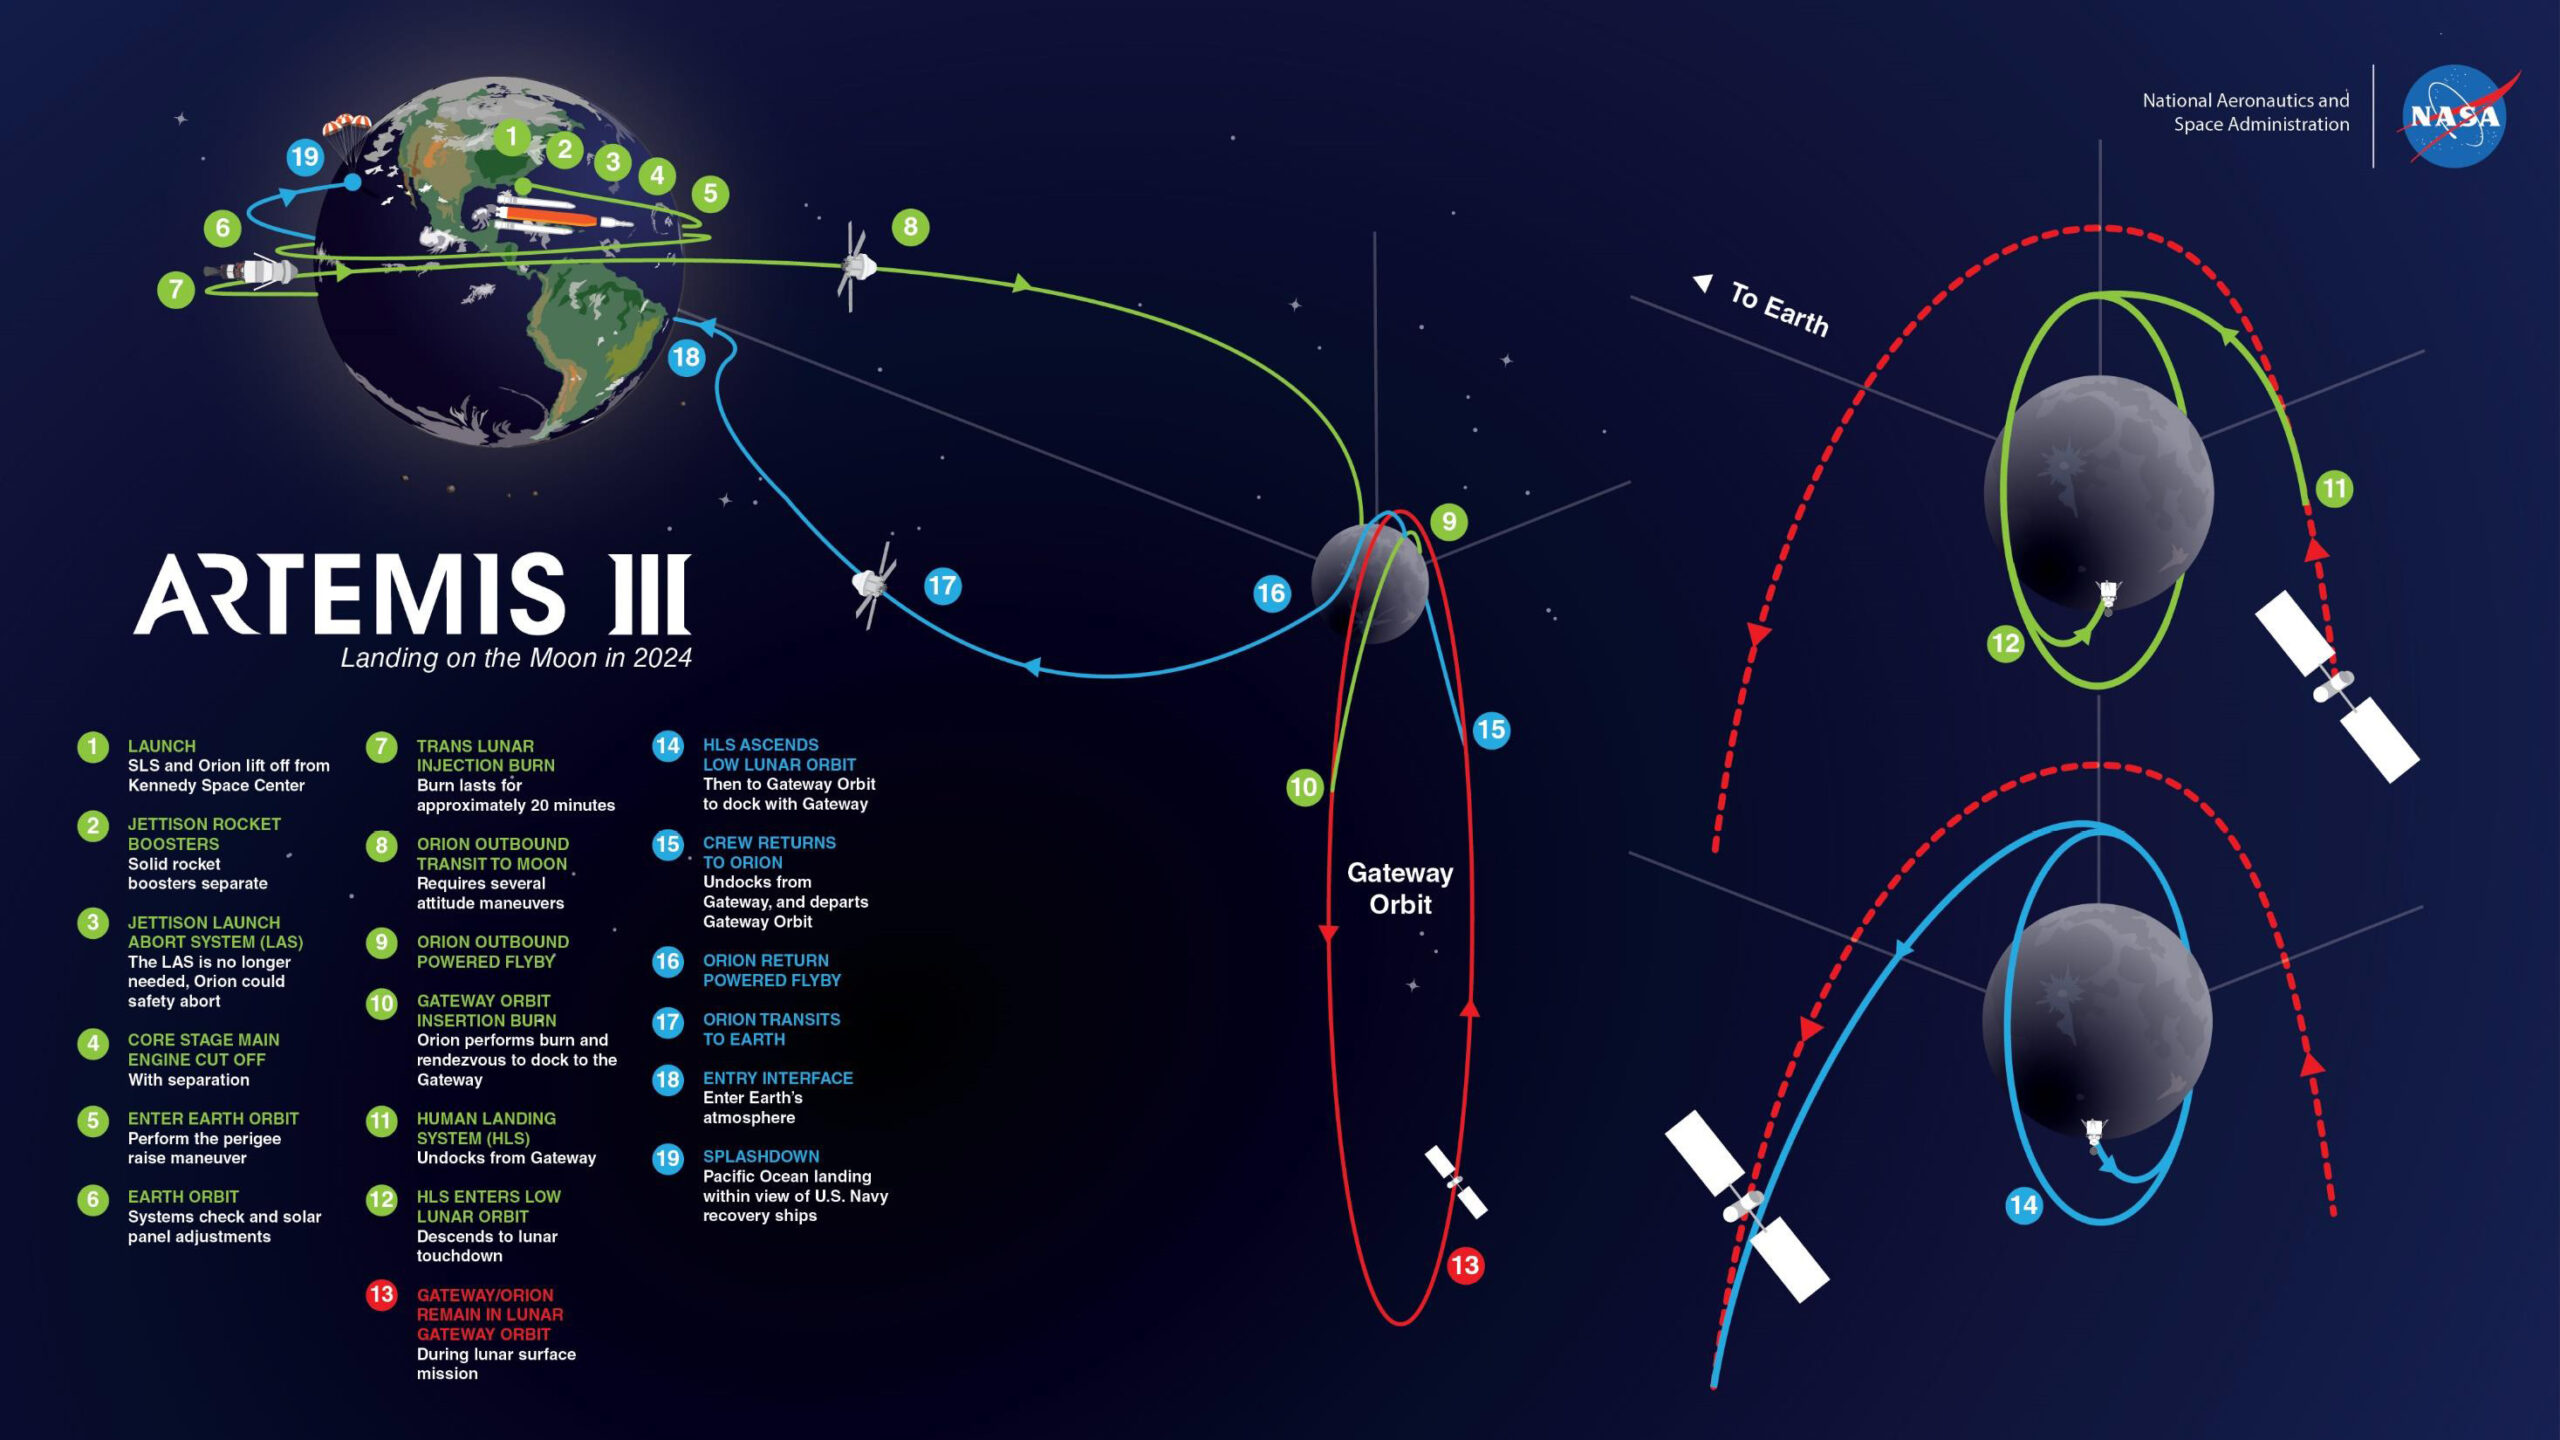 Summary of the Artemis III mission plan